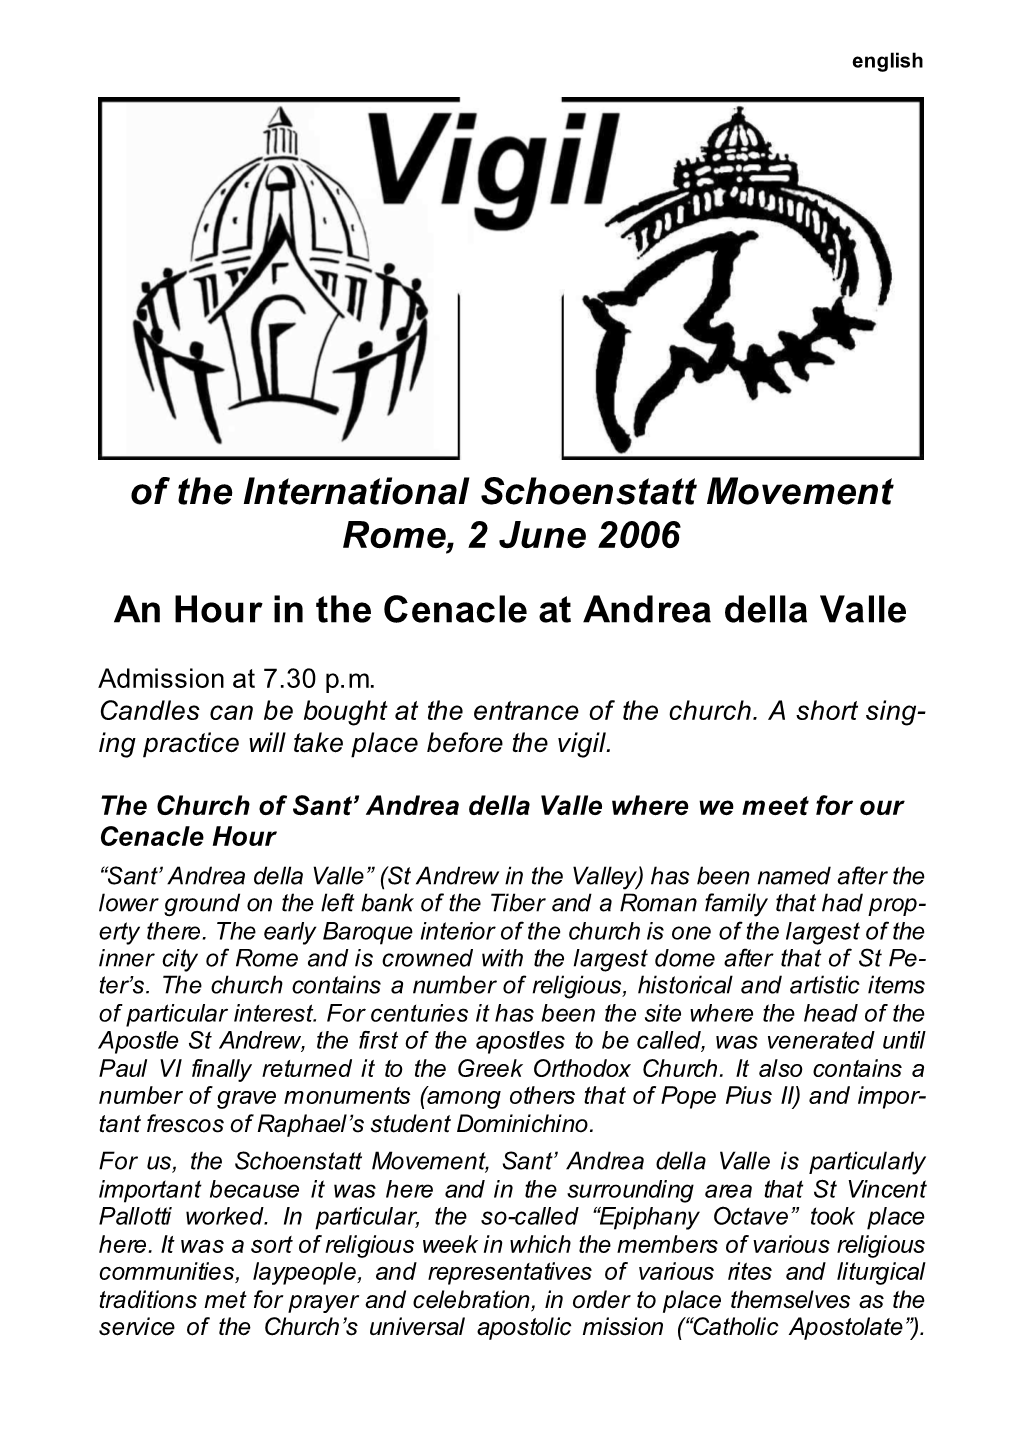 Of the International Schoenstatt Movement Rome, 2 June 2006 An